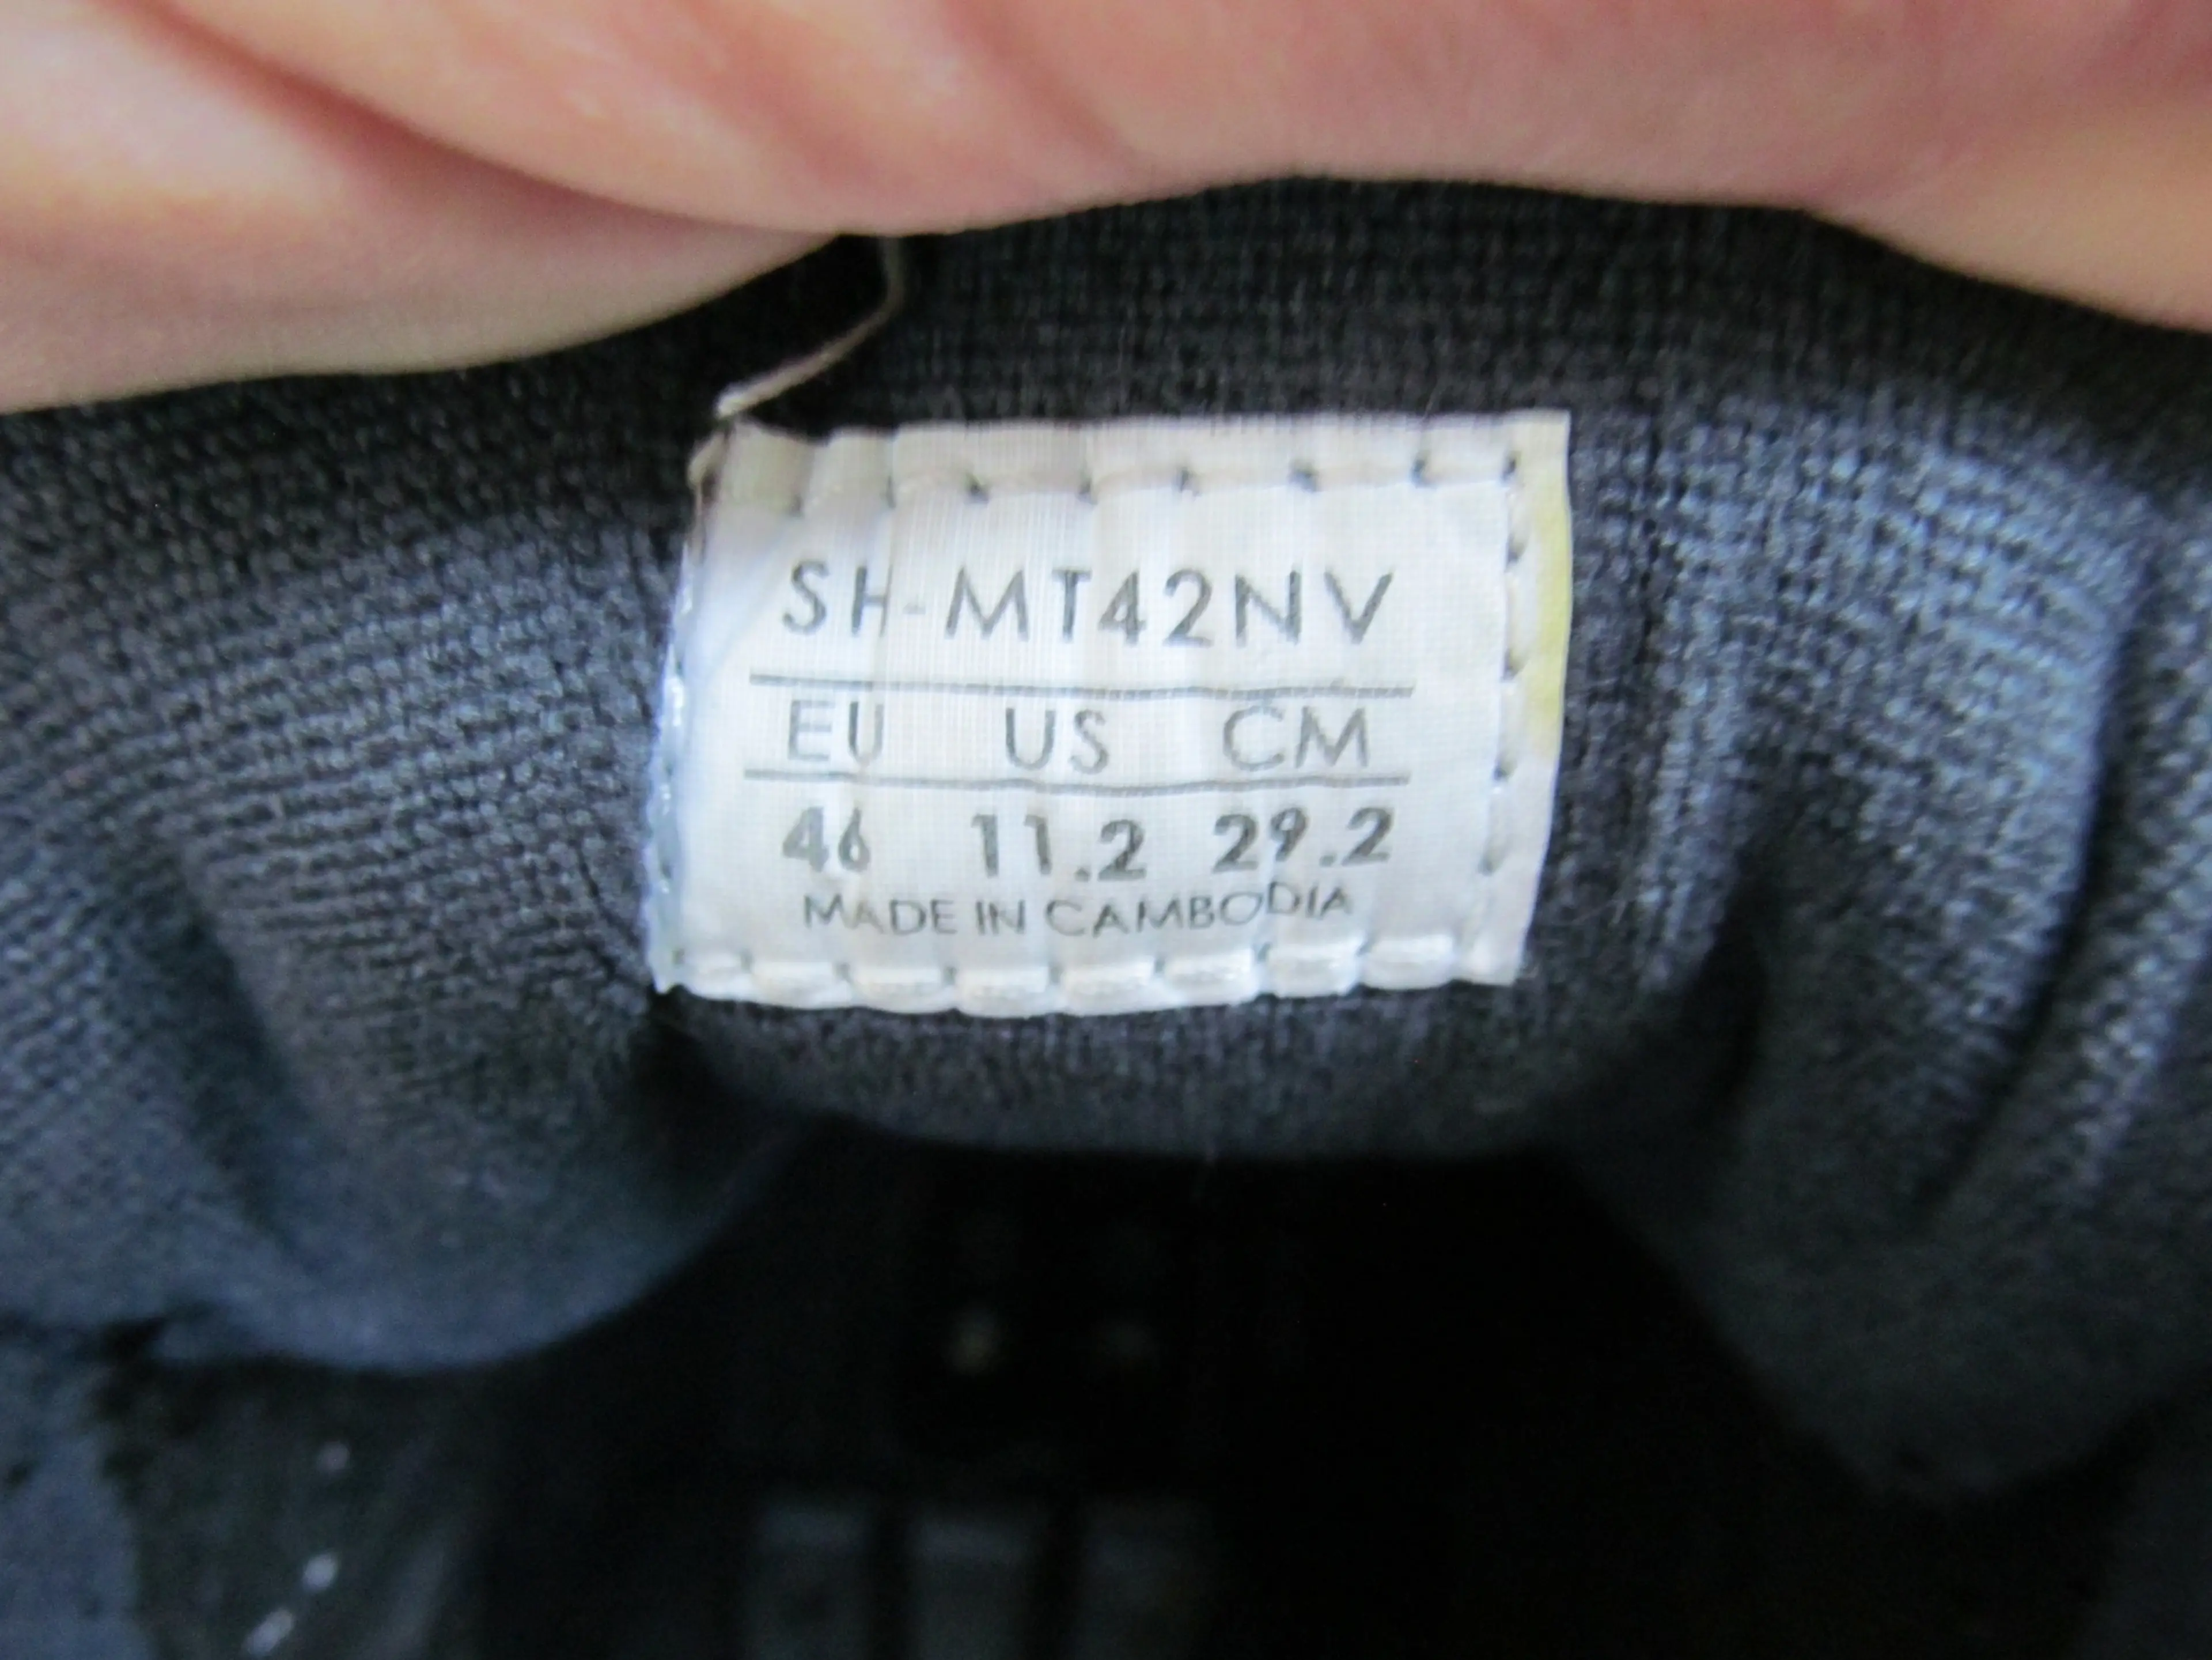 1. Pantofi Shimano SH-MV42NV nr 46, 29.2 cm